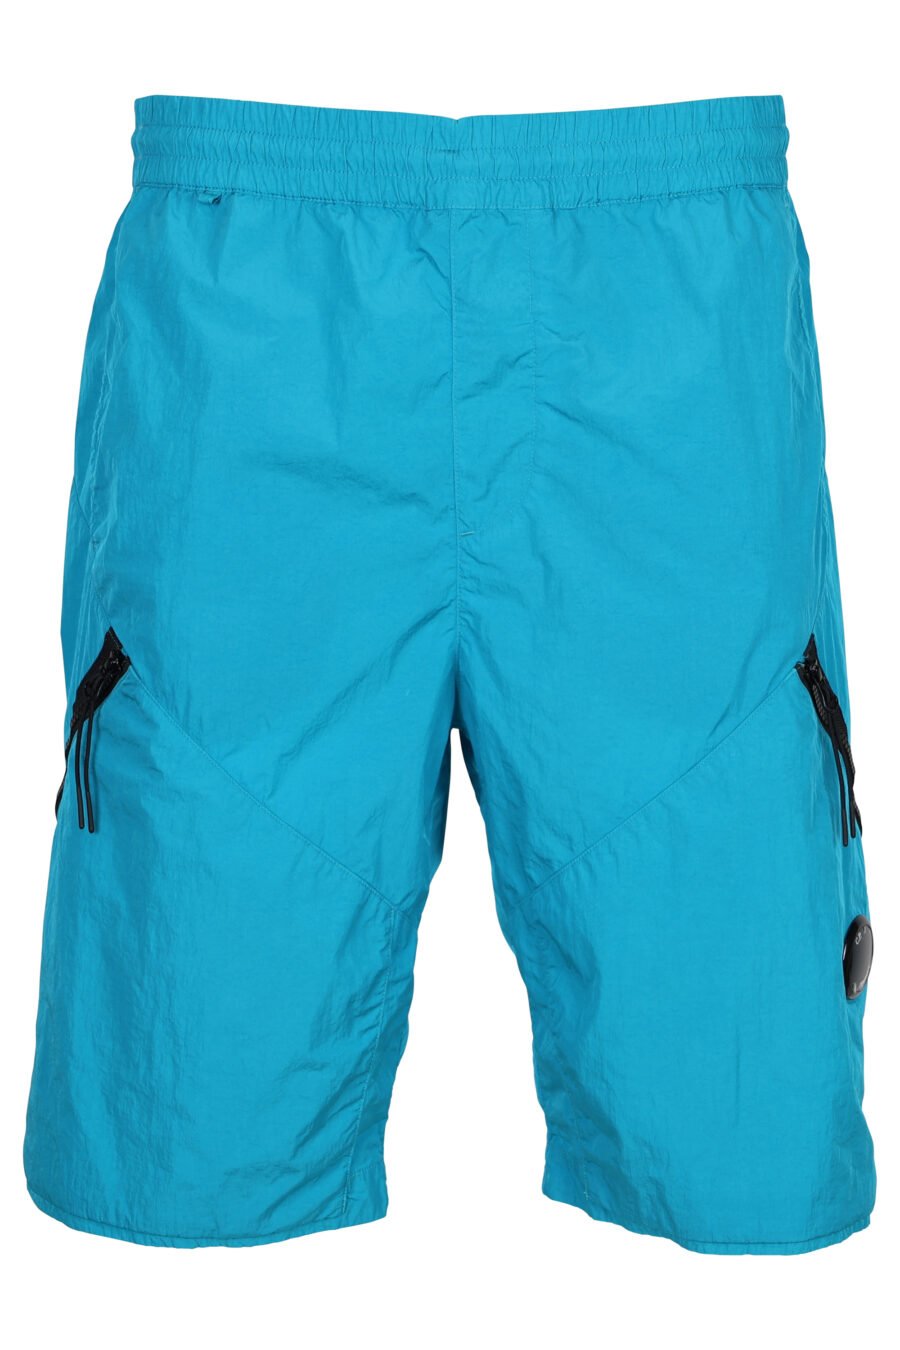 Pantalón corto azul turquesa con cremallera diagonal y logo lente - 7620943384529